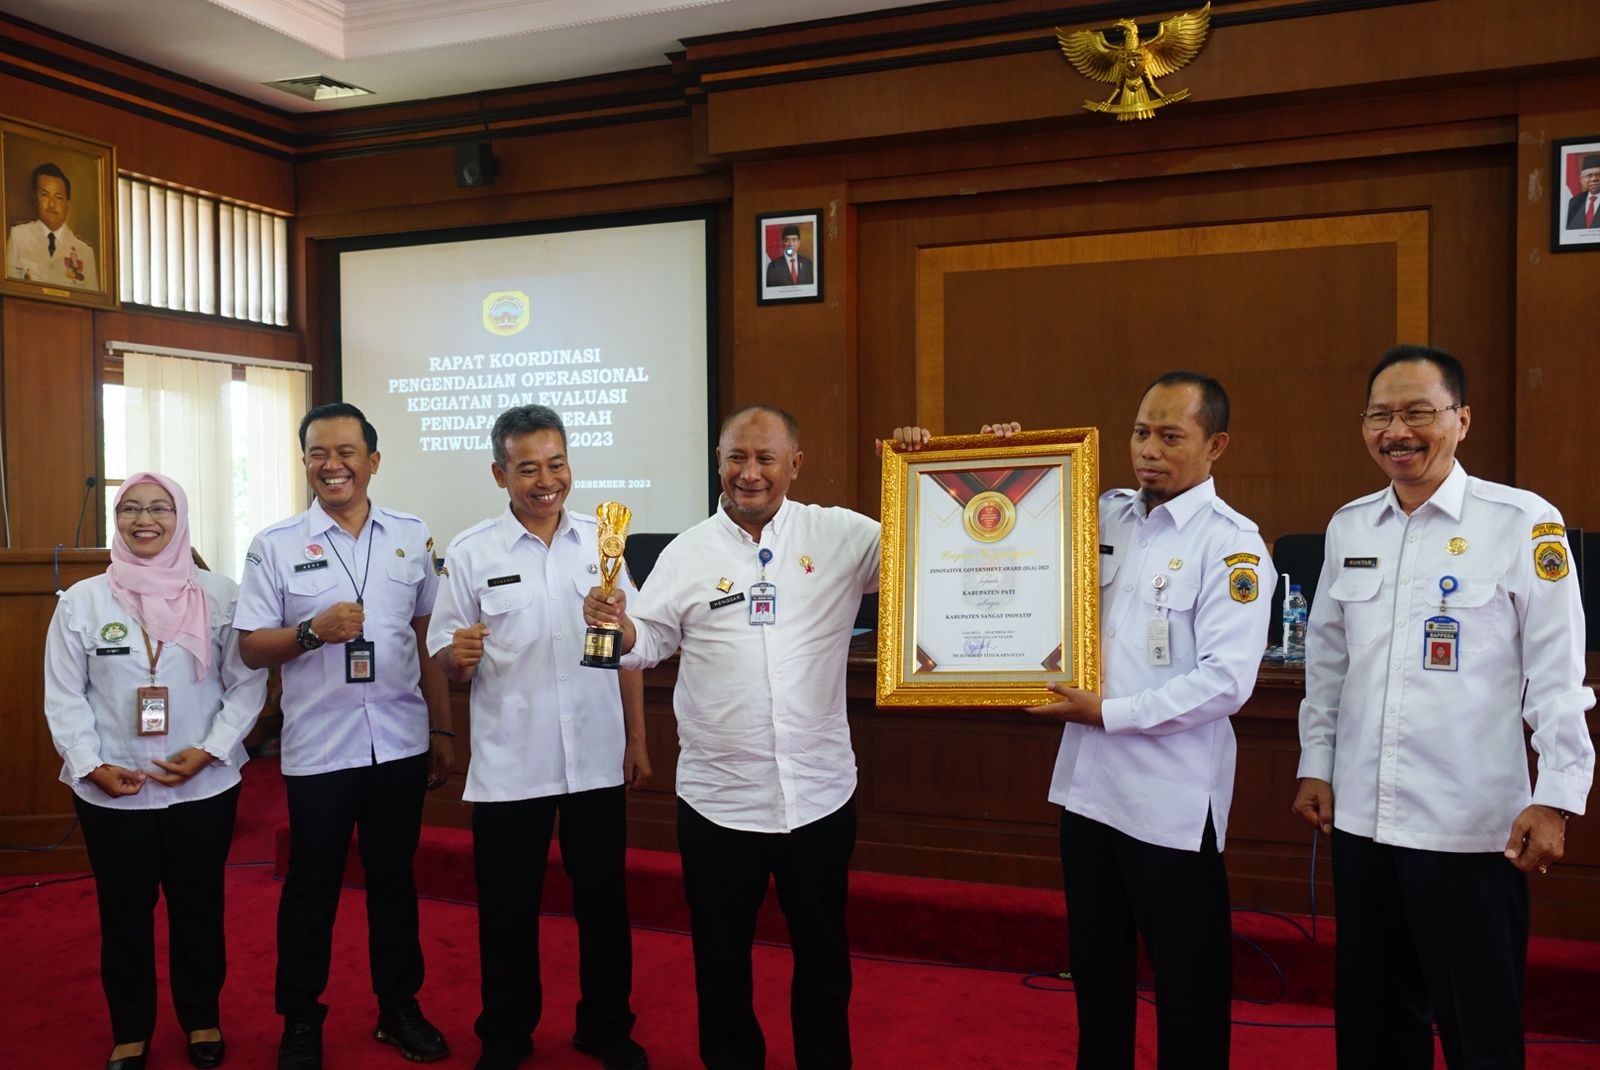 Kabupaten Pati Raih Innovative Government Award 2023 dari Kemendagri